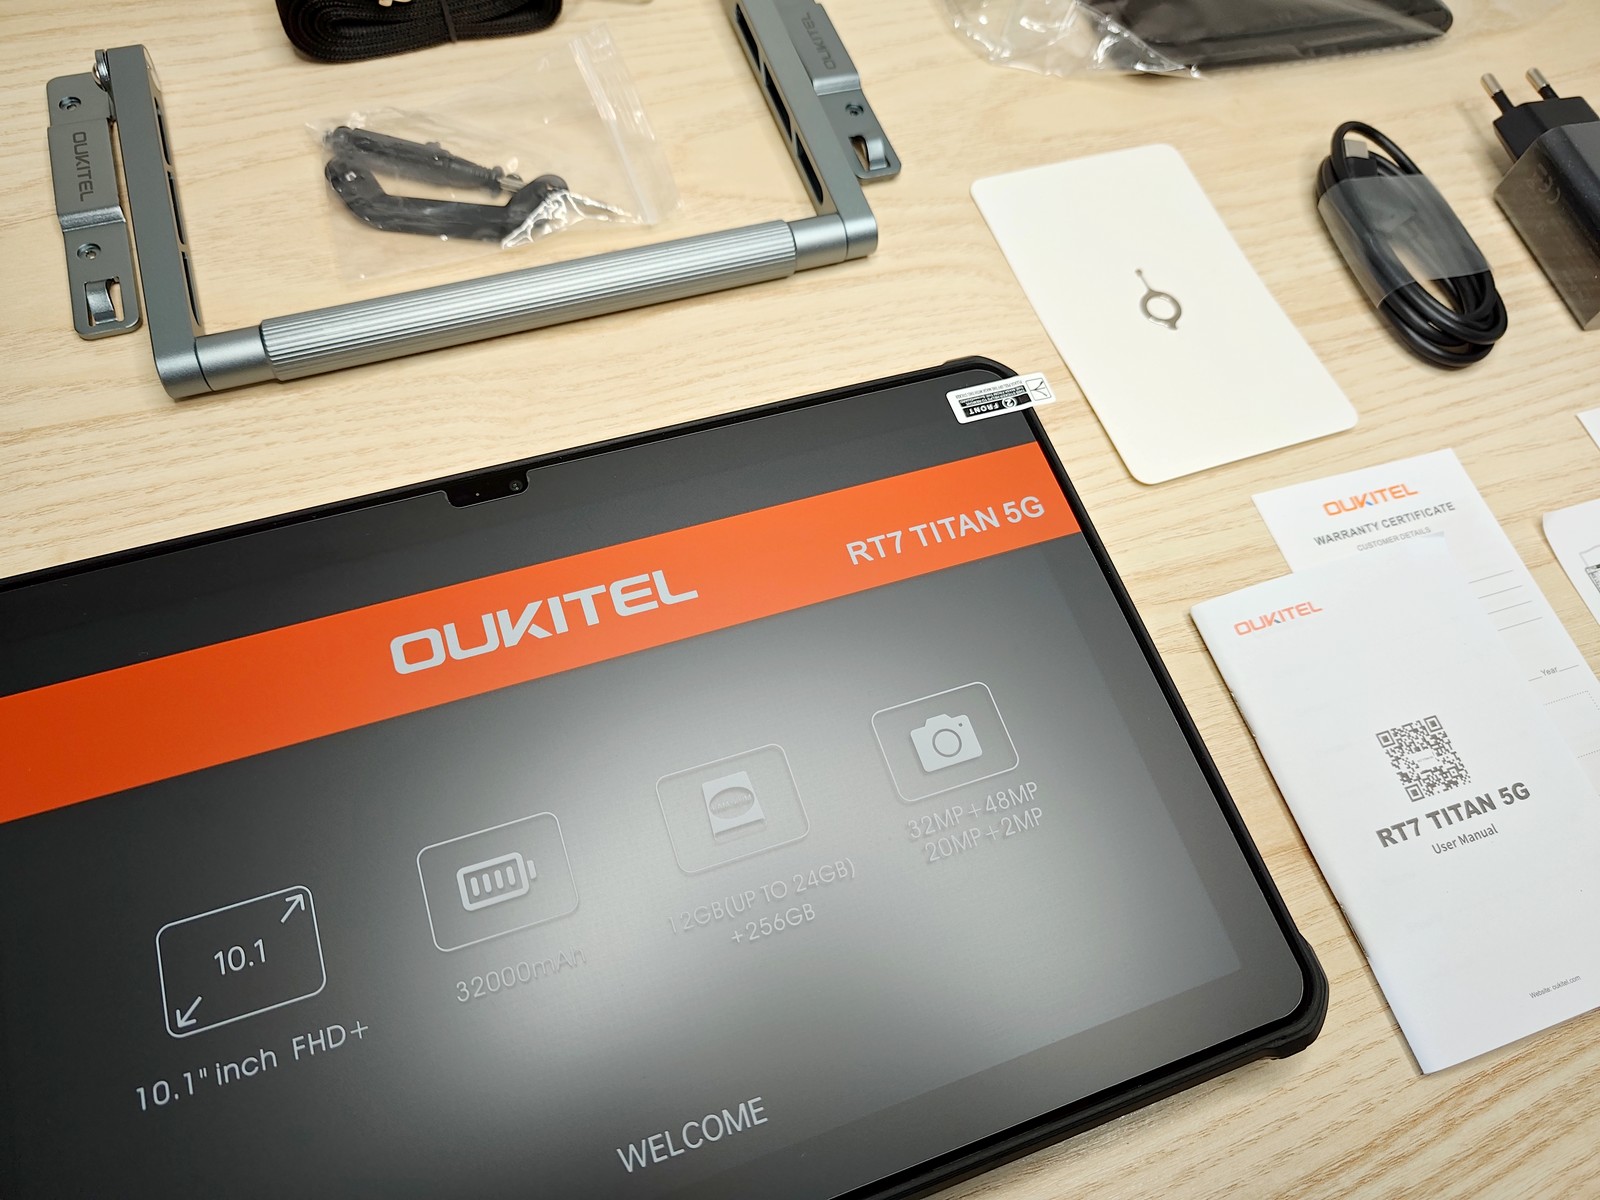 Oukitel RT7 Titan: Une tablette Android 5G avec une énorme batterie de  32.000 mAh!